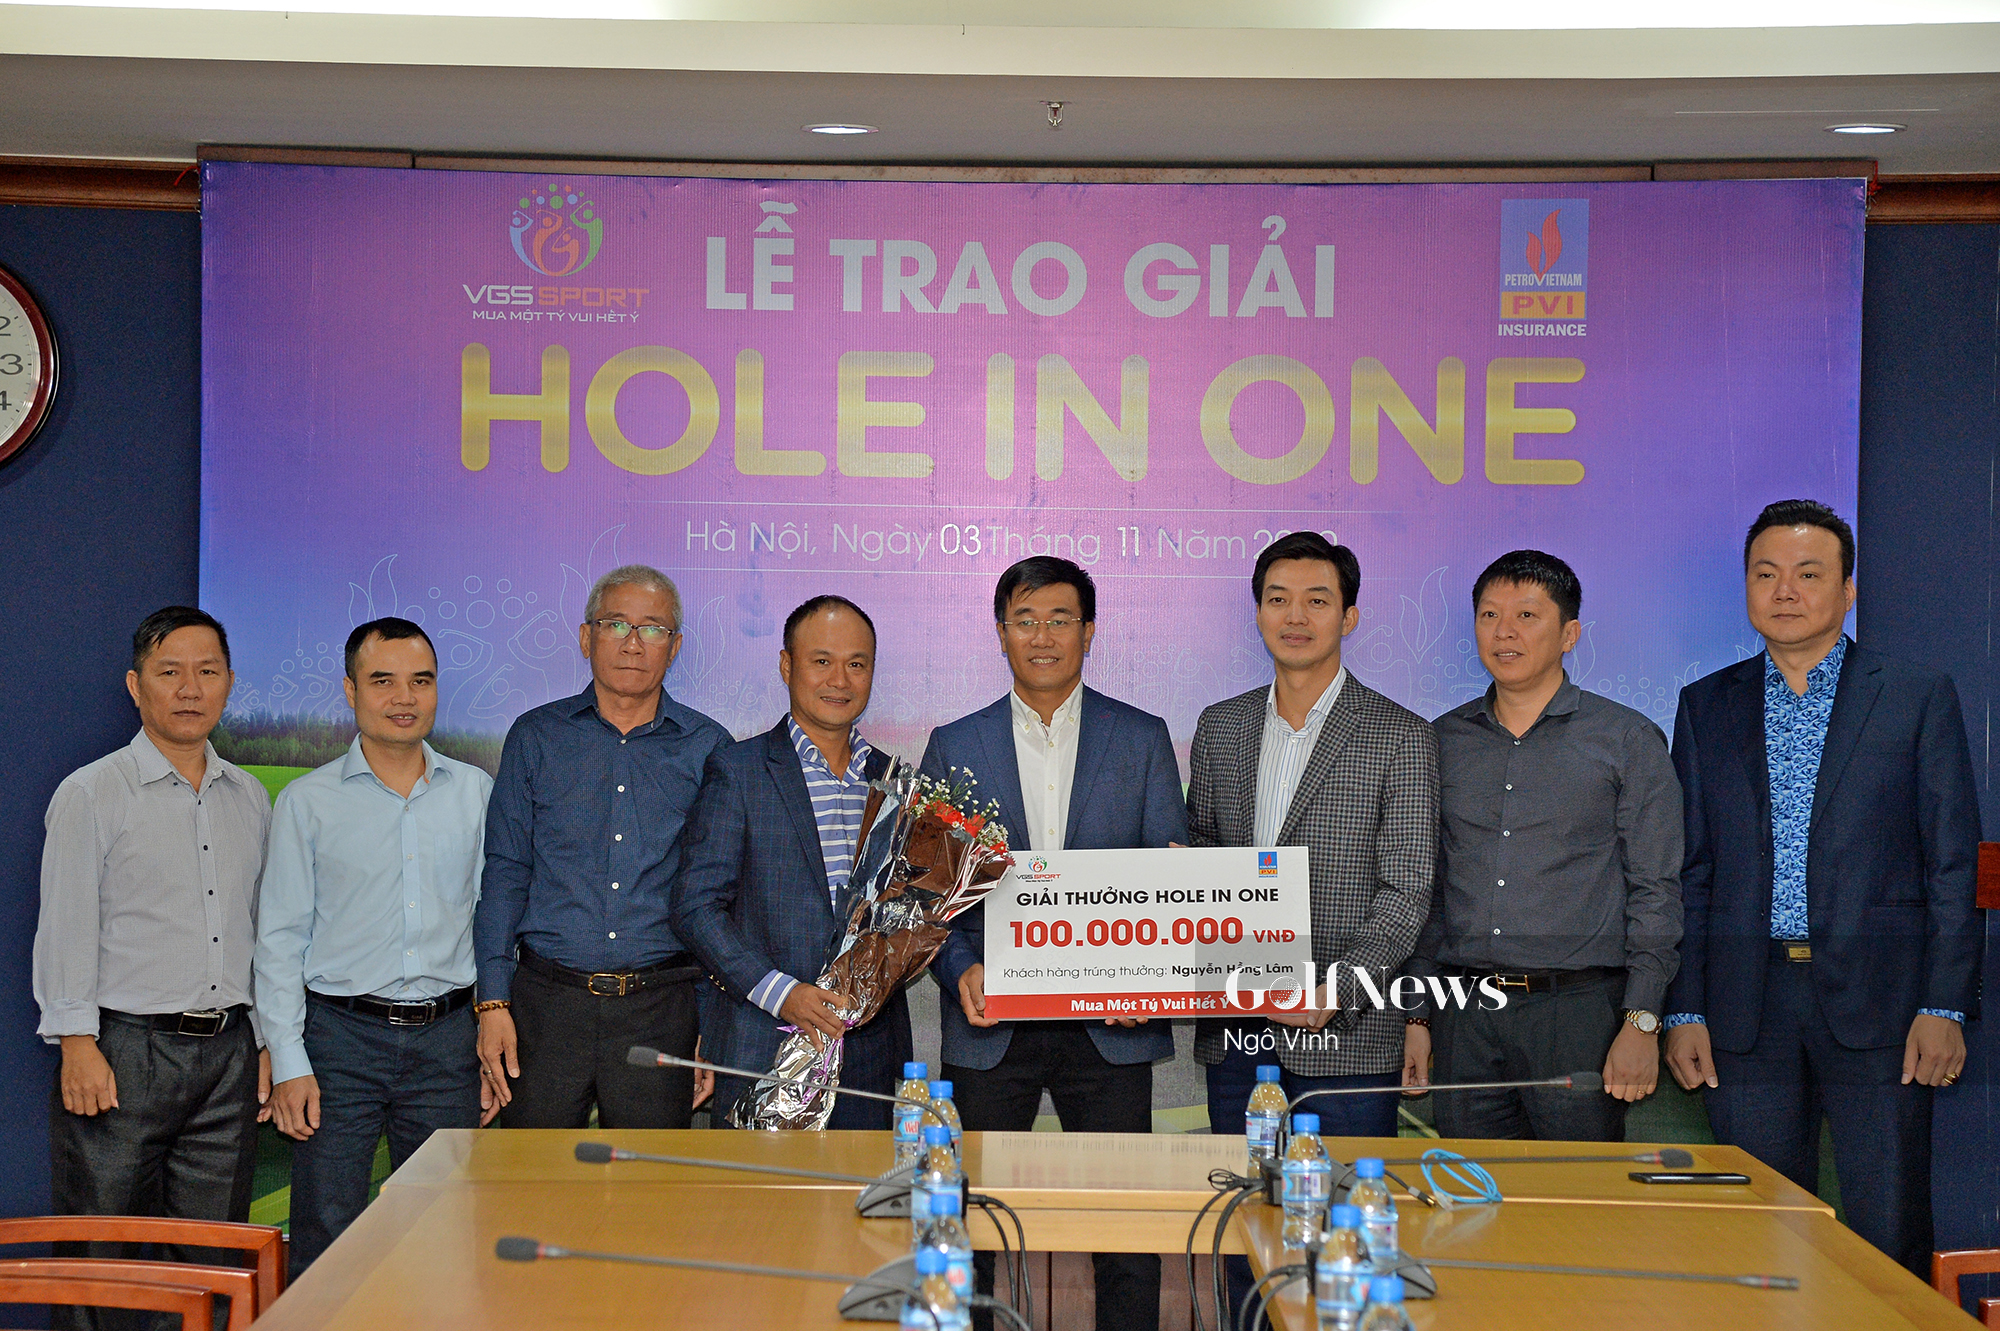 Sau 5 ngày trúng HIO, golfer Nguyễn Hồng Lâm nhận 100 triệu từ VGS Sport khi mua gói Dịch vụ giải thưởng HIO